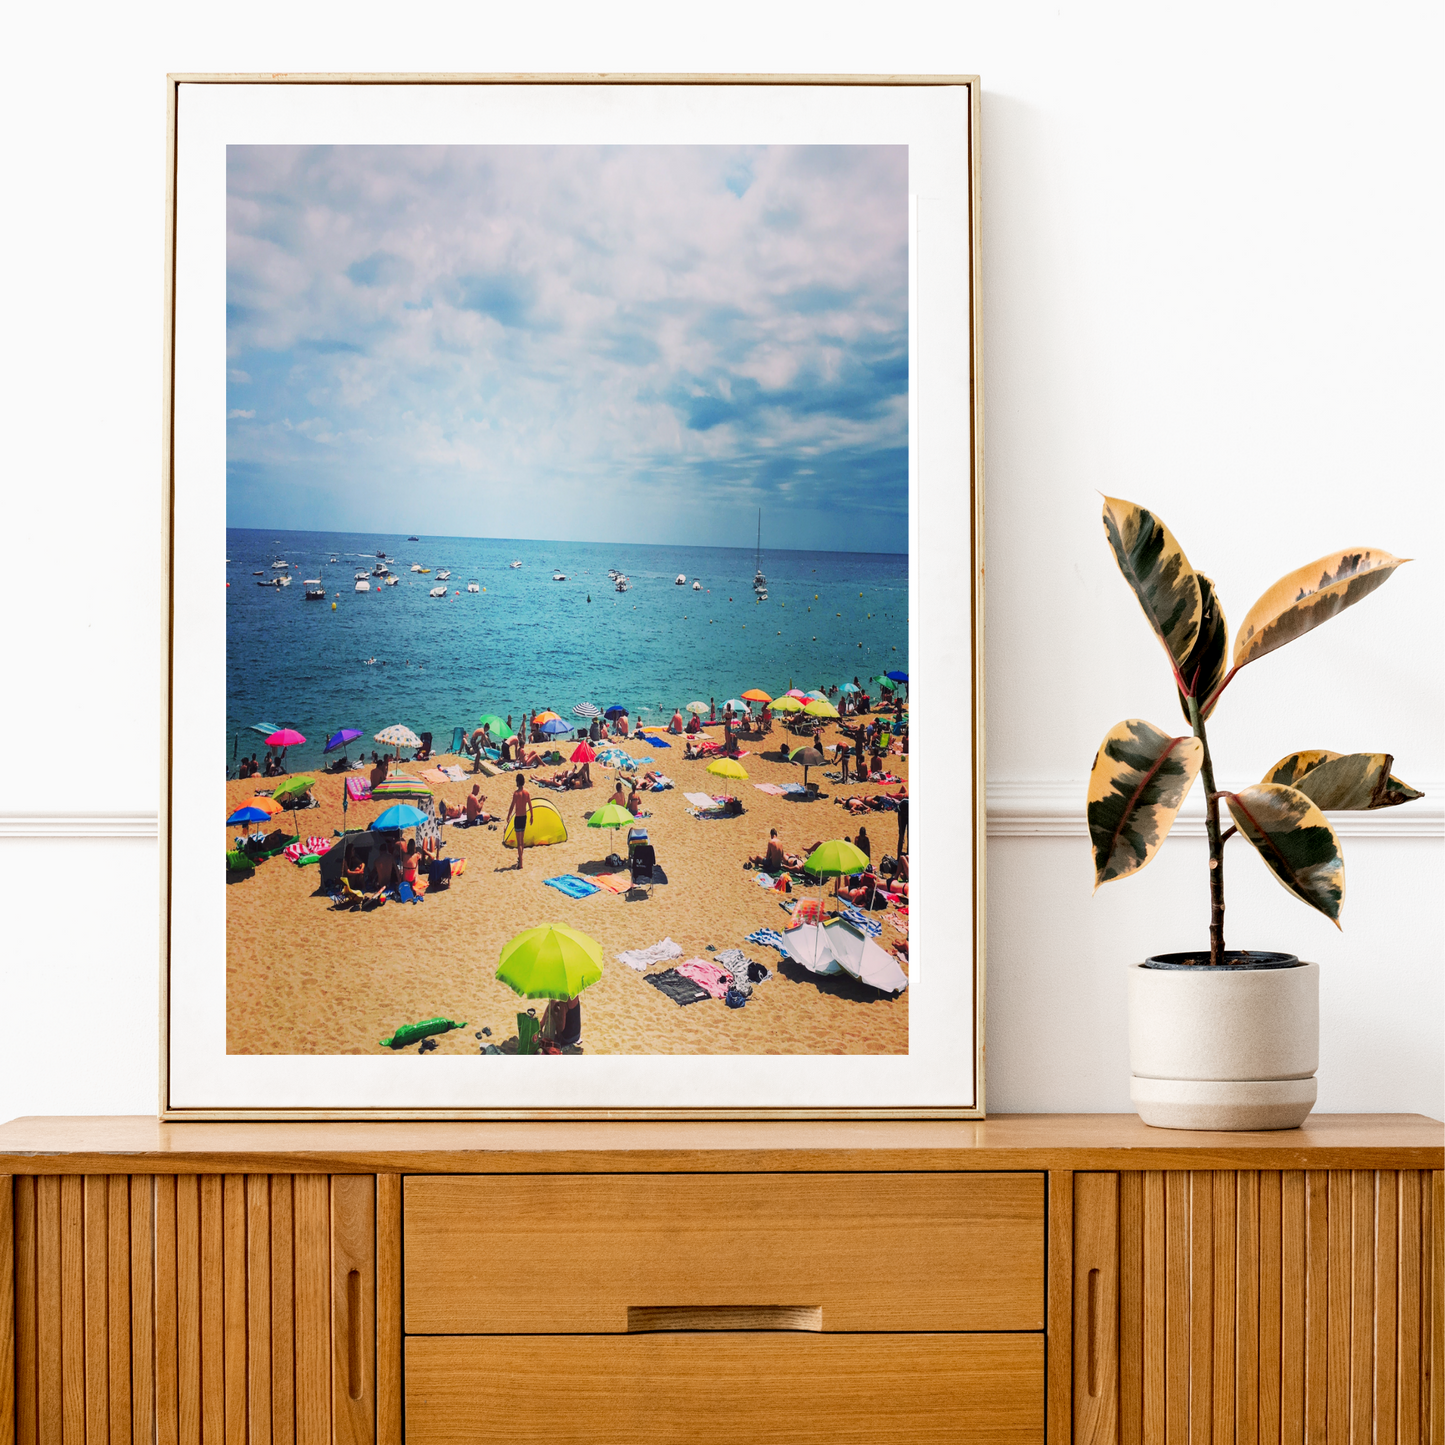 Spain - Summer Beach Print